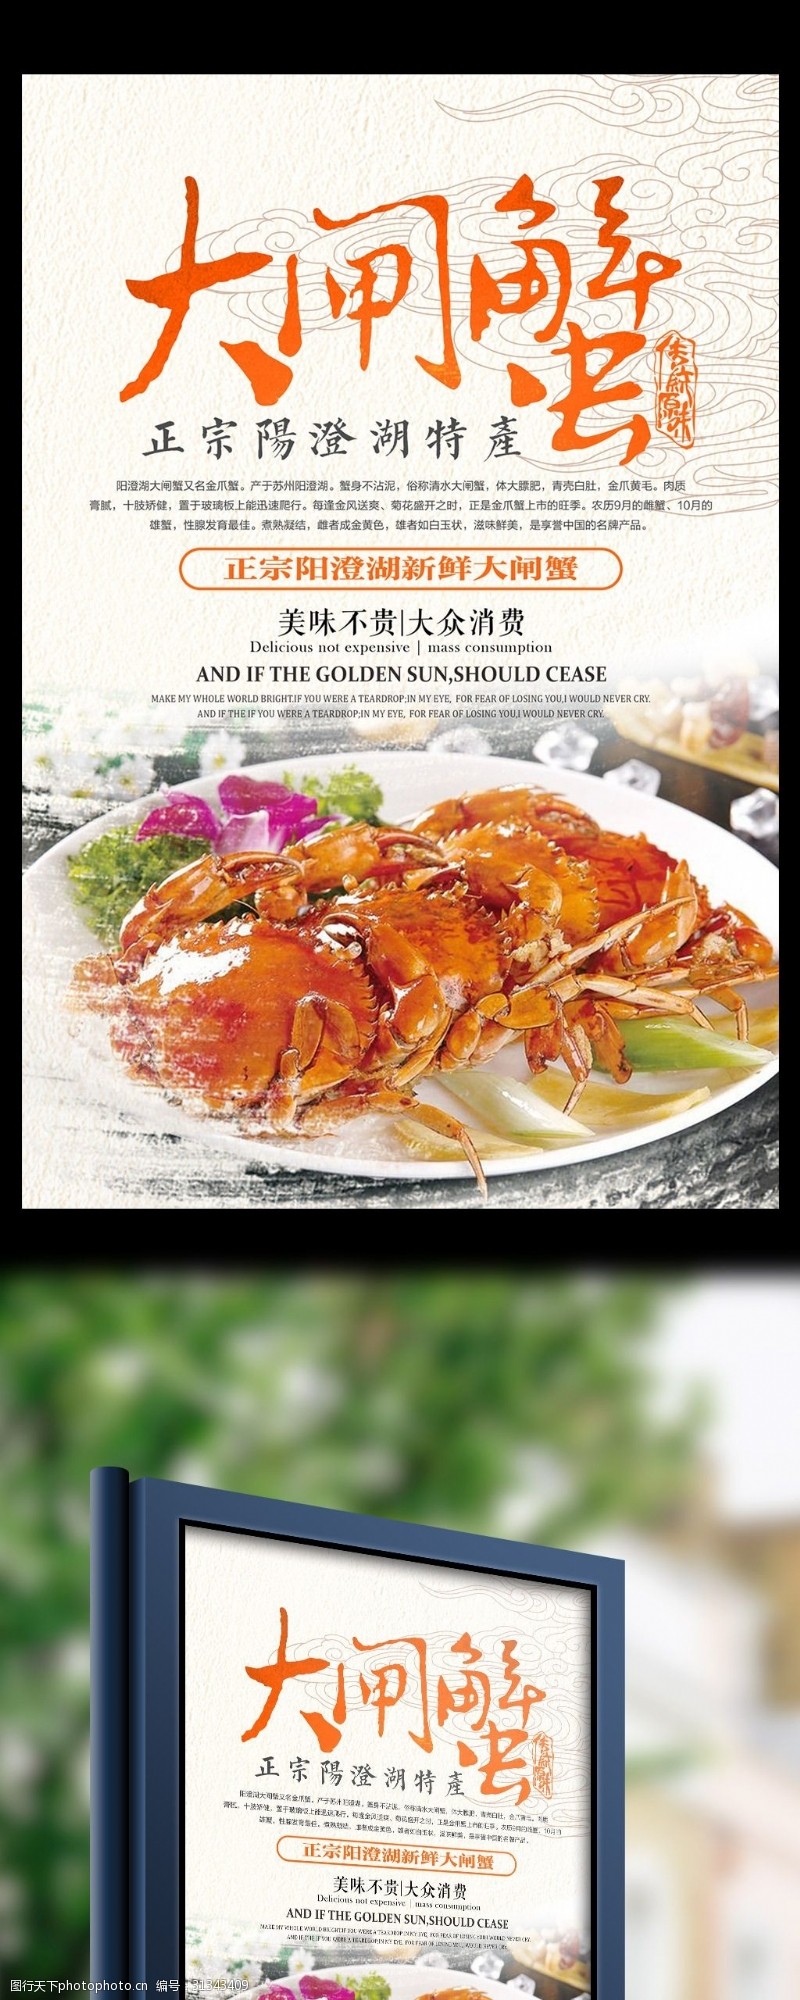 螃蟹宣传中国风清新简约阳澄湖大闸蟹美食宣传海报